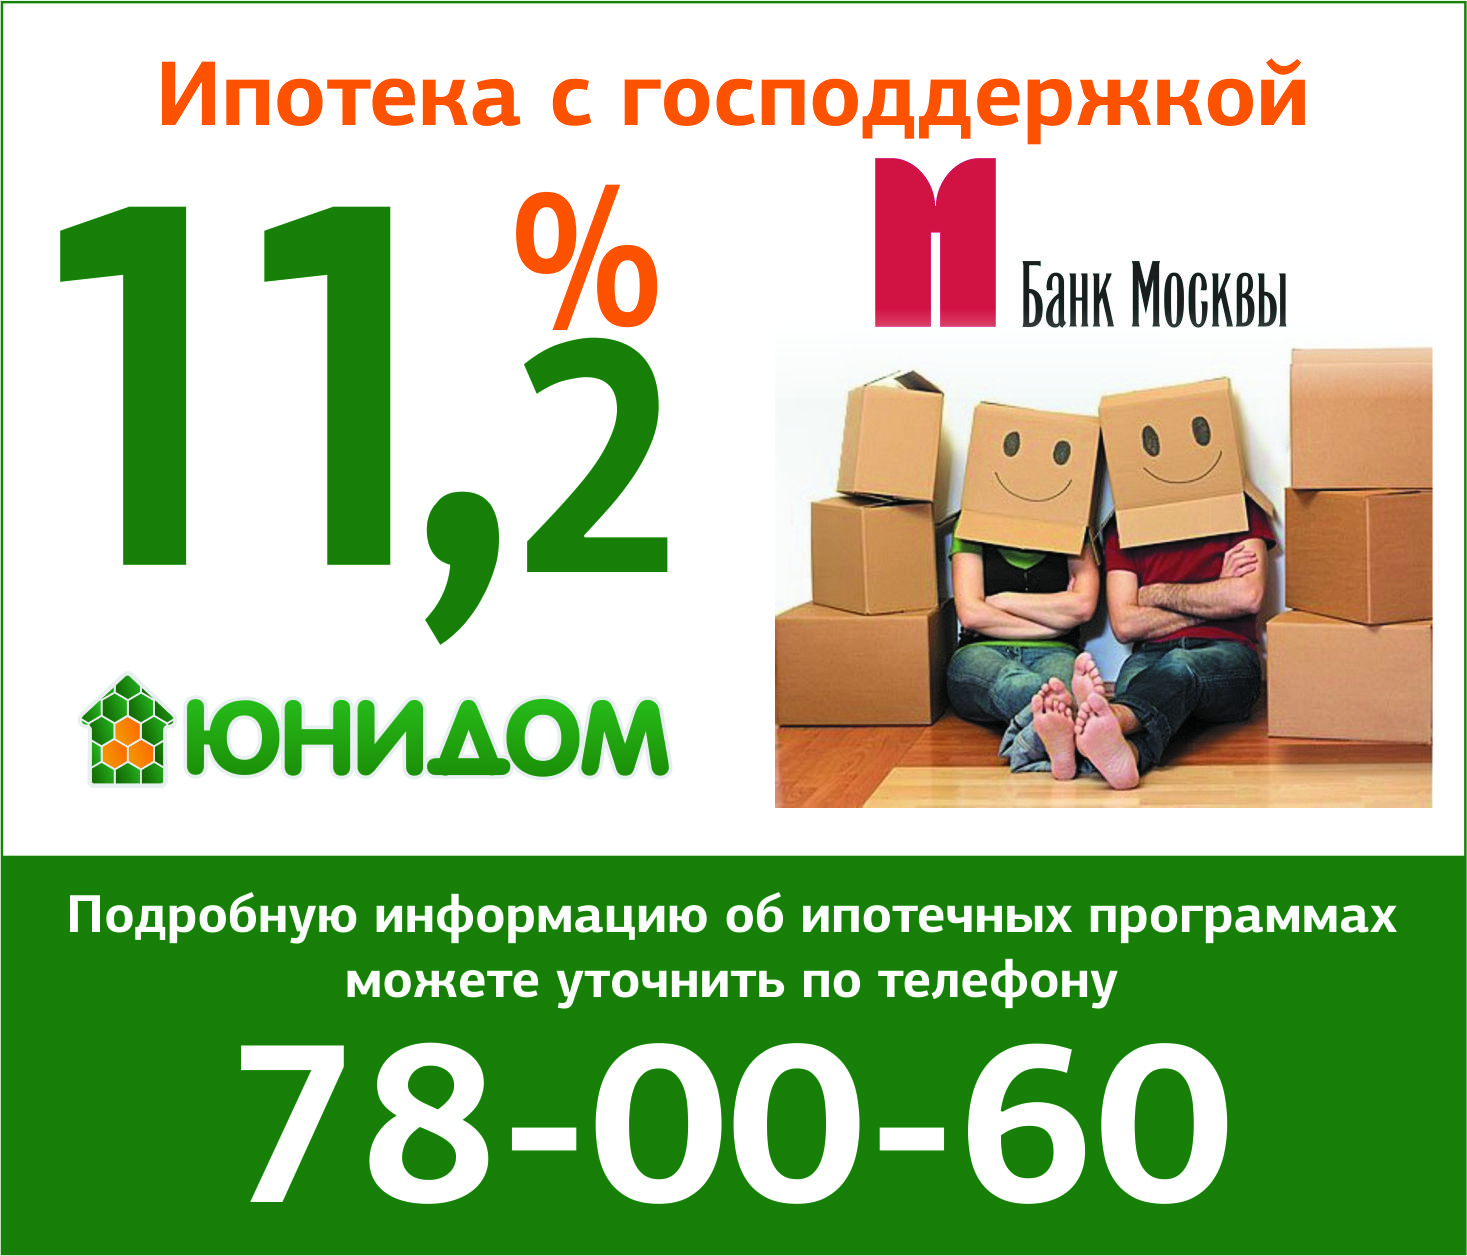 «Банк Москвы» снижает ставку на ипотеку с господдержкой 